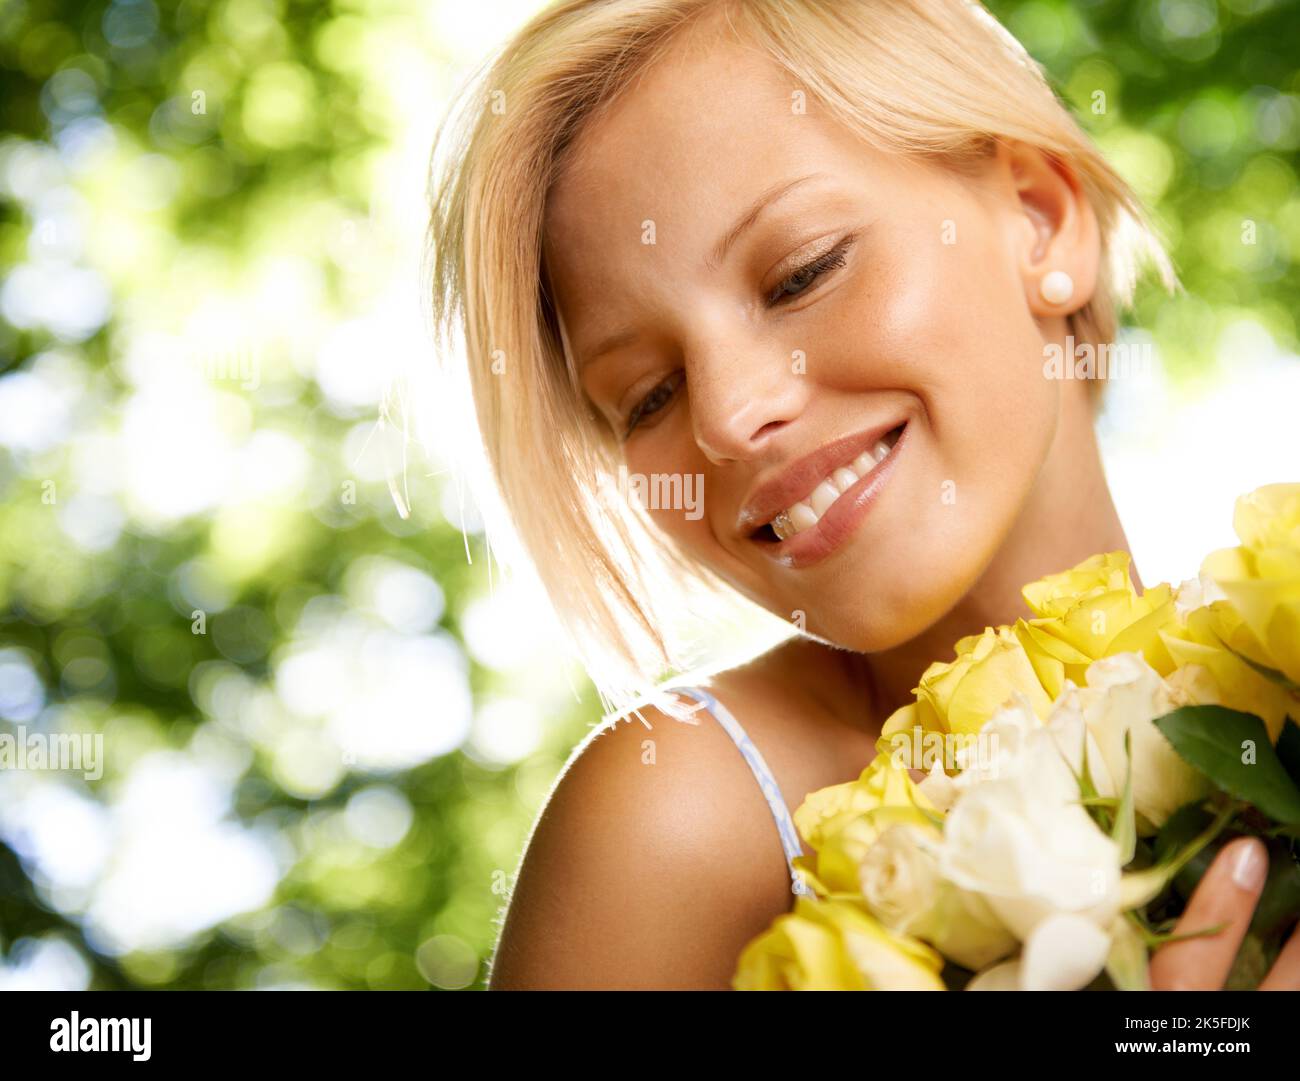 Elle rend tout plus agréable. Une jeune femme souriante debout dehors tenant un bouquet de jaune. Banque D'Images